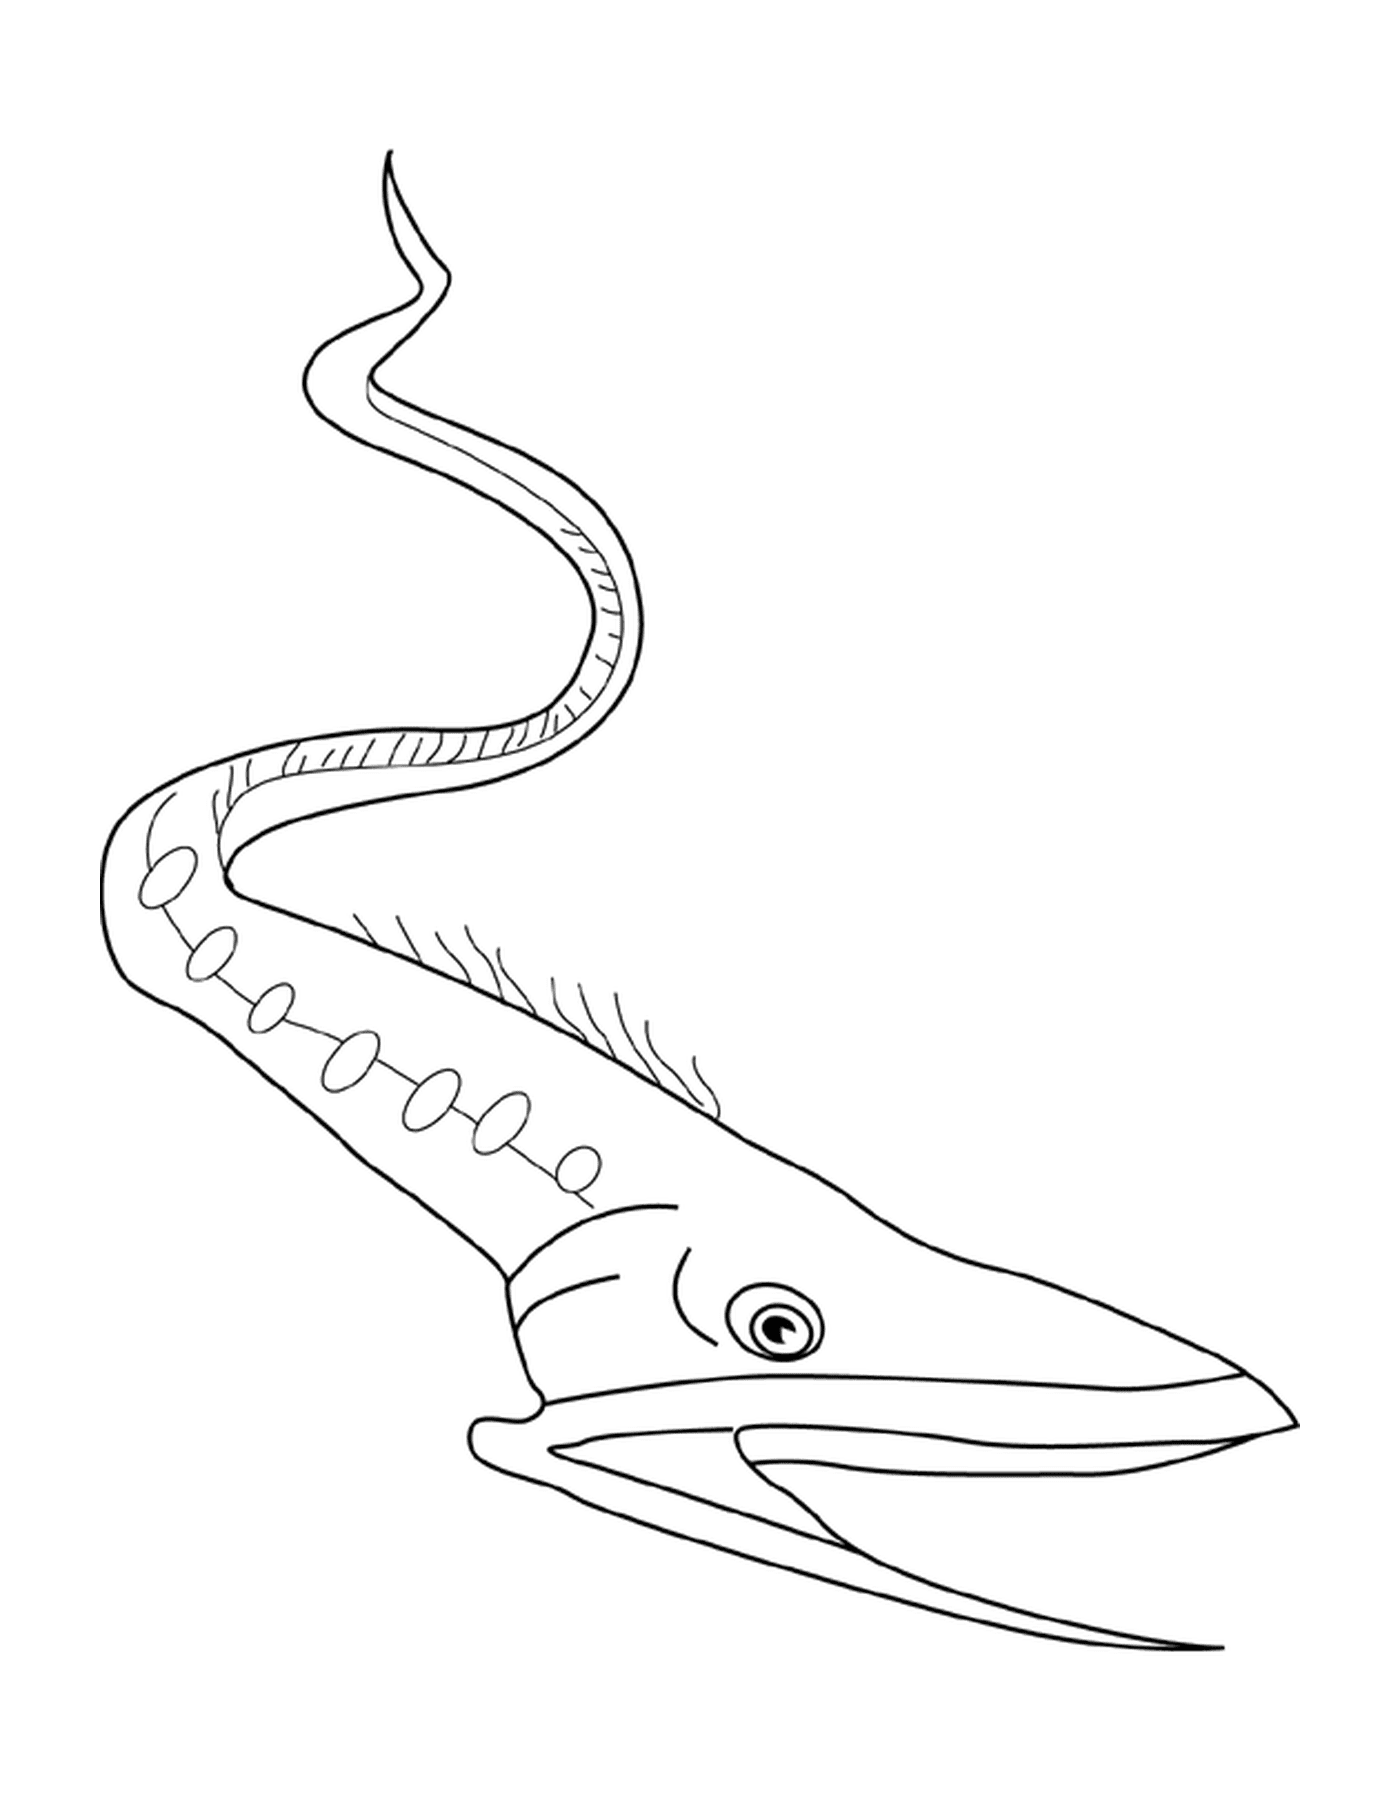  Gulper Aal ähnelt einem Fisch 